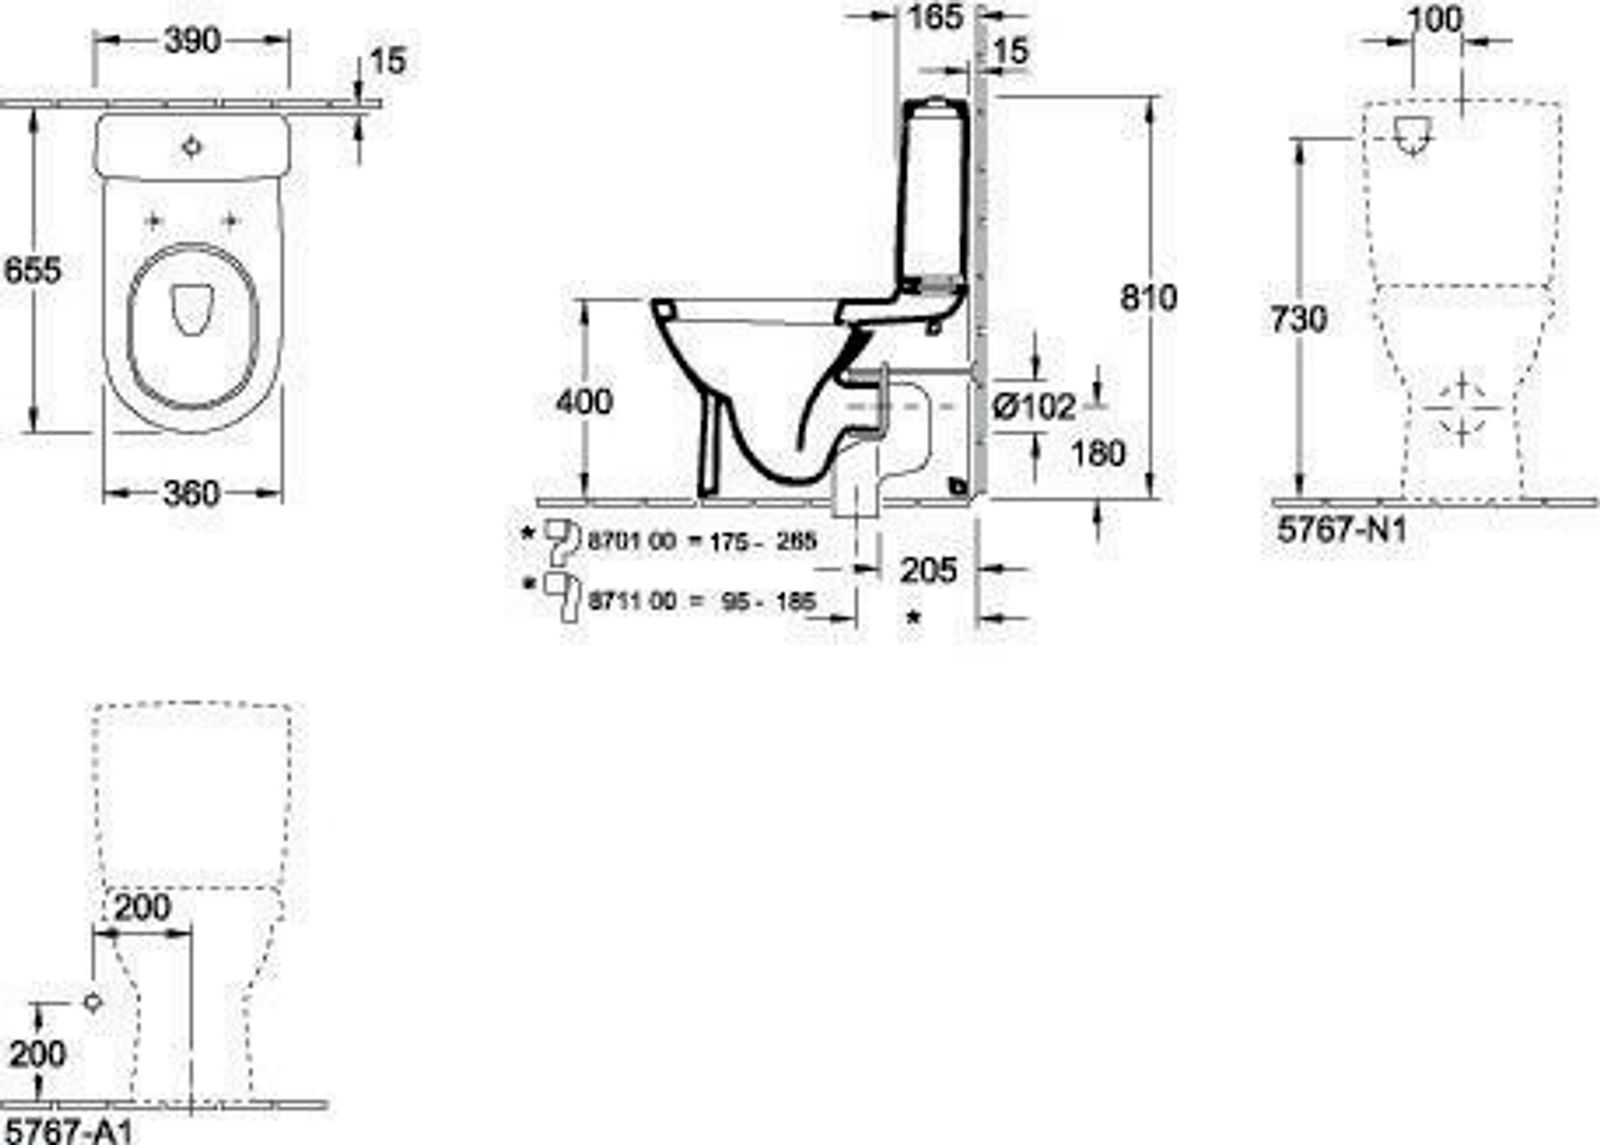 Villeroy & Boch Tiefspül-WC für Kombination O.n 565810 360x640mm Oval Weiß Alpin